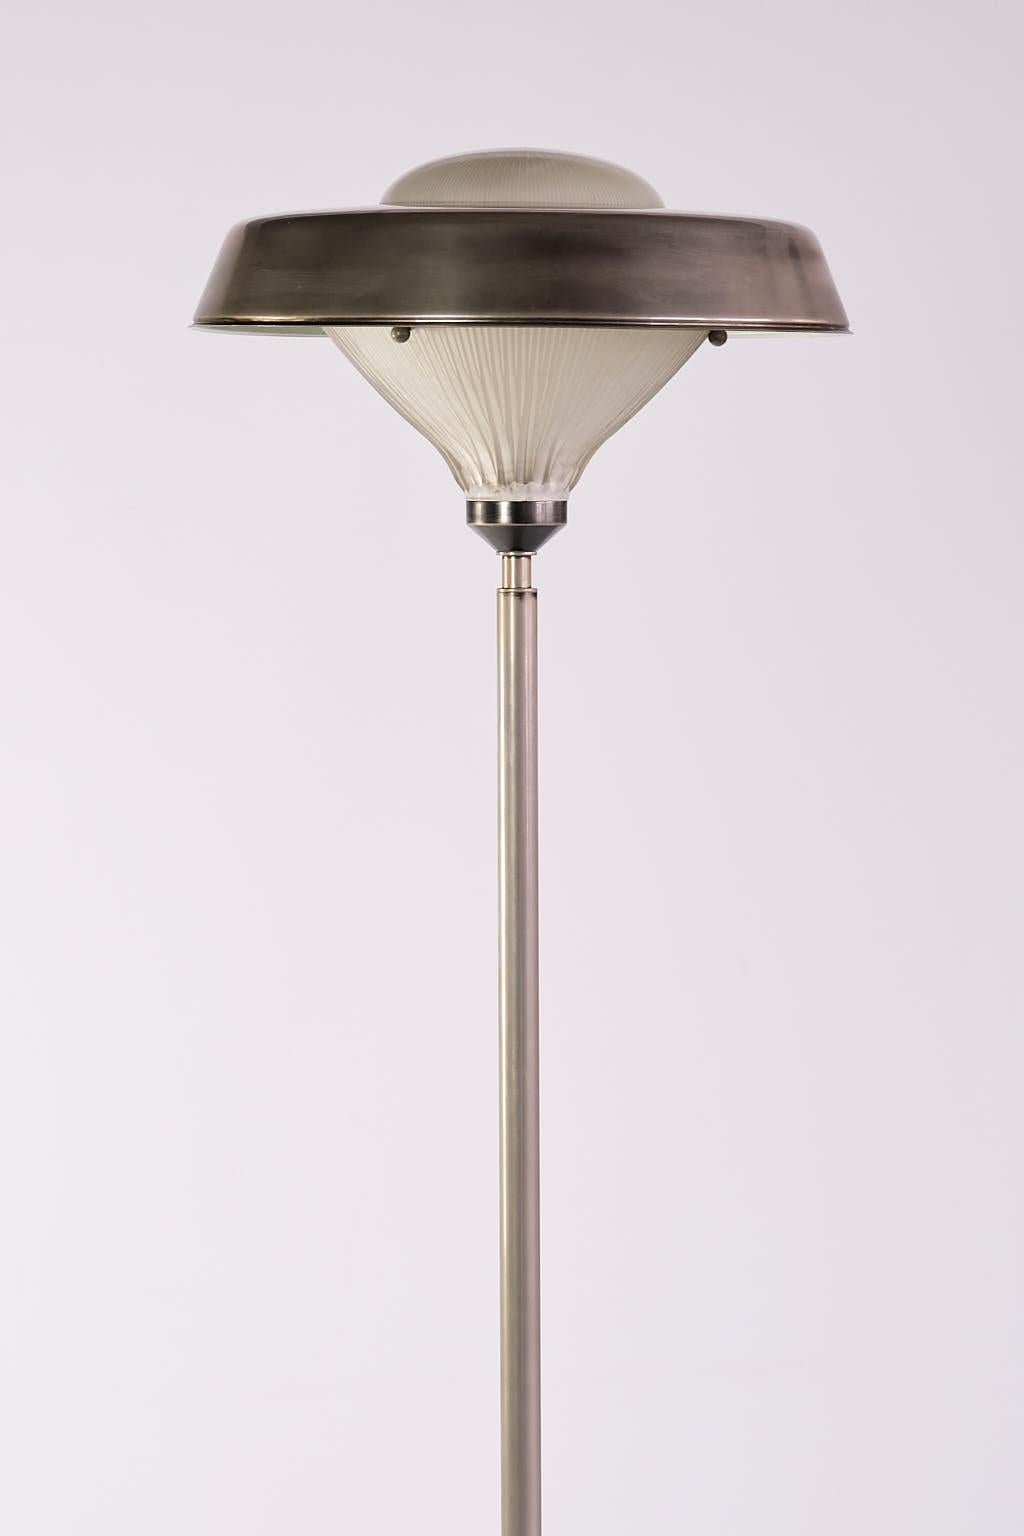 Studio BBPR 'Talia' Floor Lamp in Steel and Glass, Artemide, Italy, 1962 For Sale 6